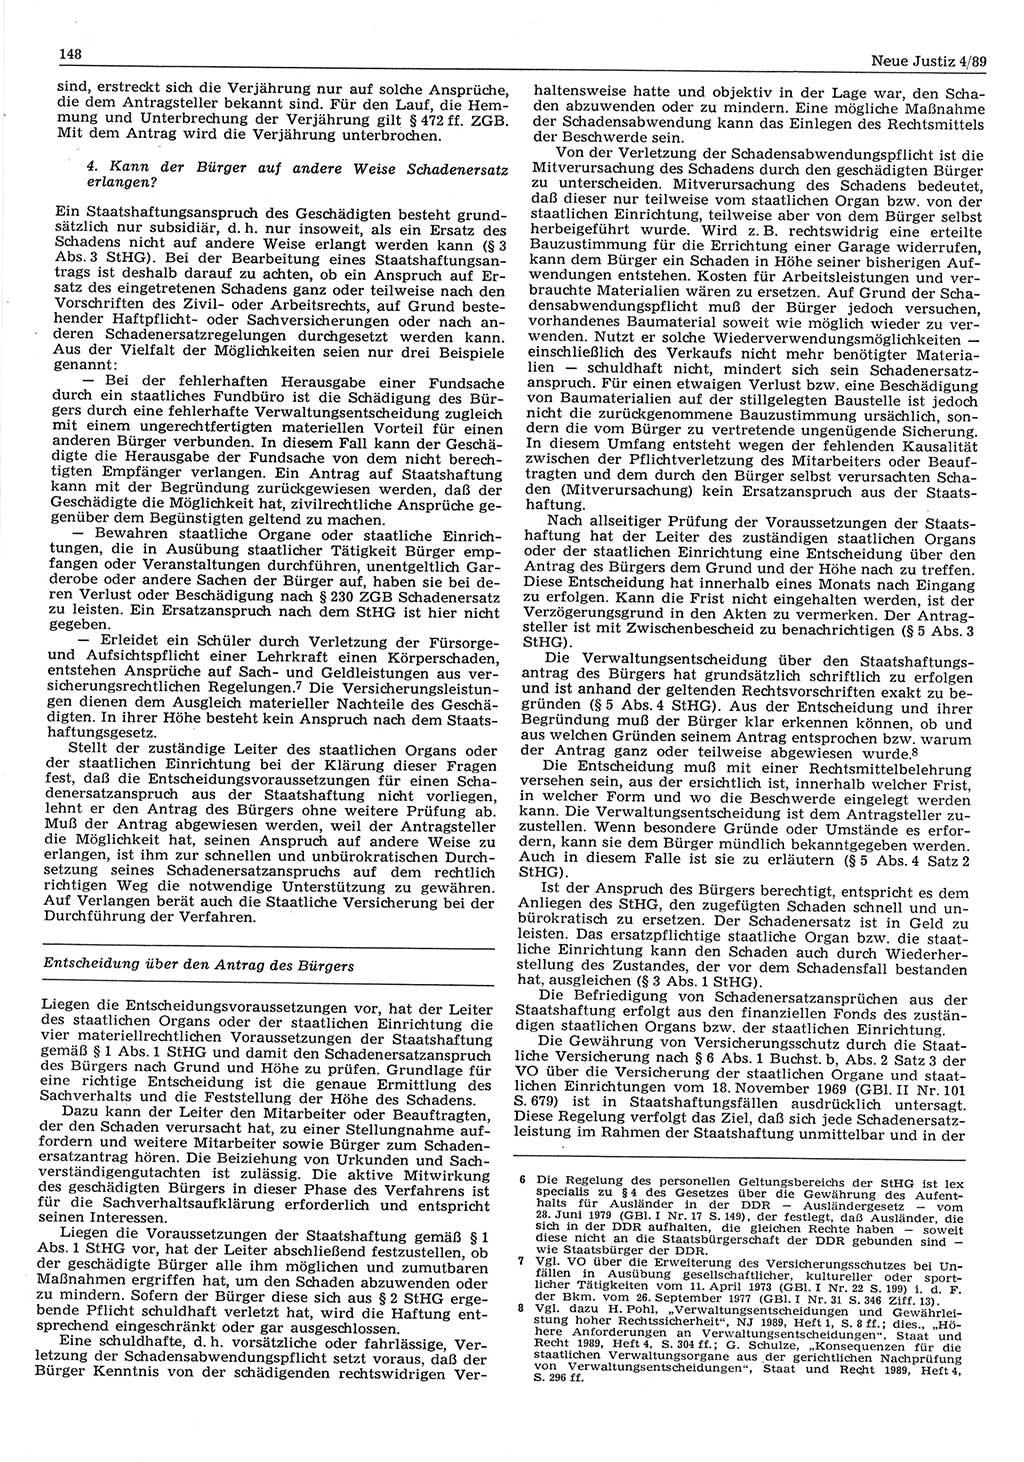 Neue Justiz (NJ), Zeitschrift für sozialistisches Recht und Gesetzlichkeit [Deutsche Demokratische Republik (DDR)], 43. Jahrgang 1989, Seite 148 (NJ DDR 1989, S. 148)